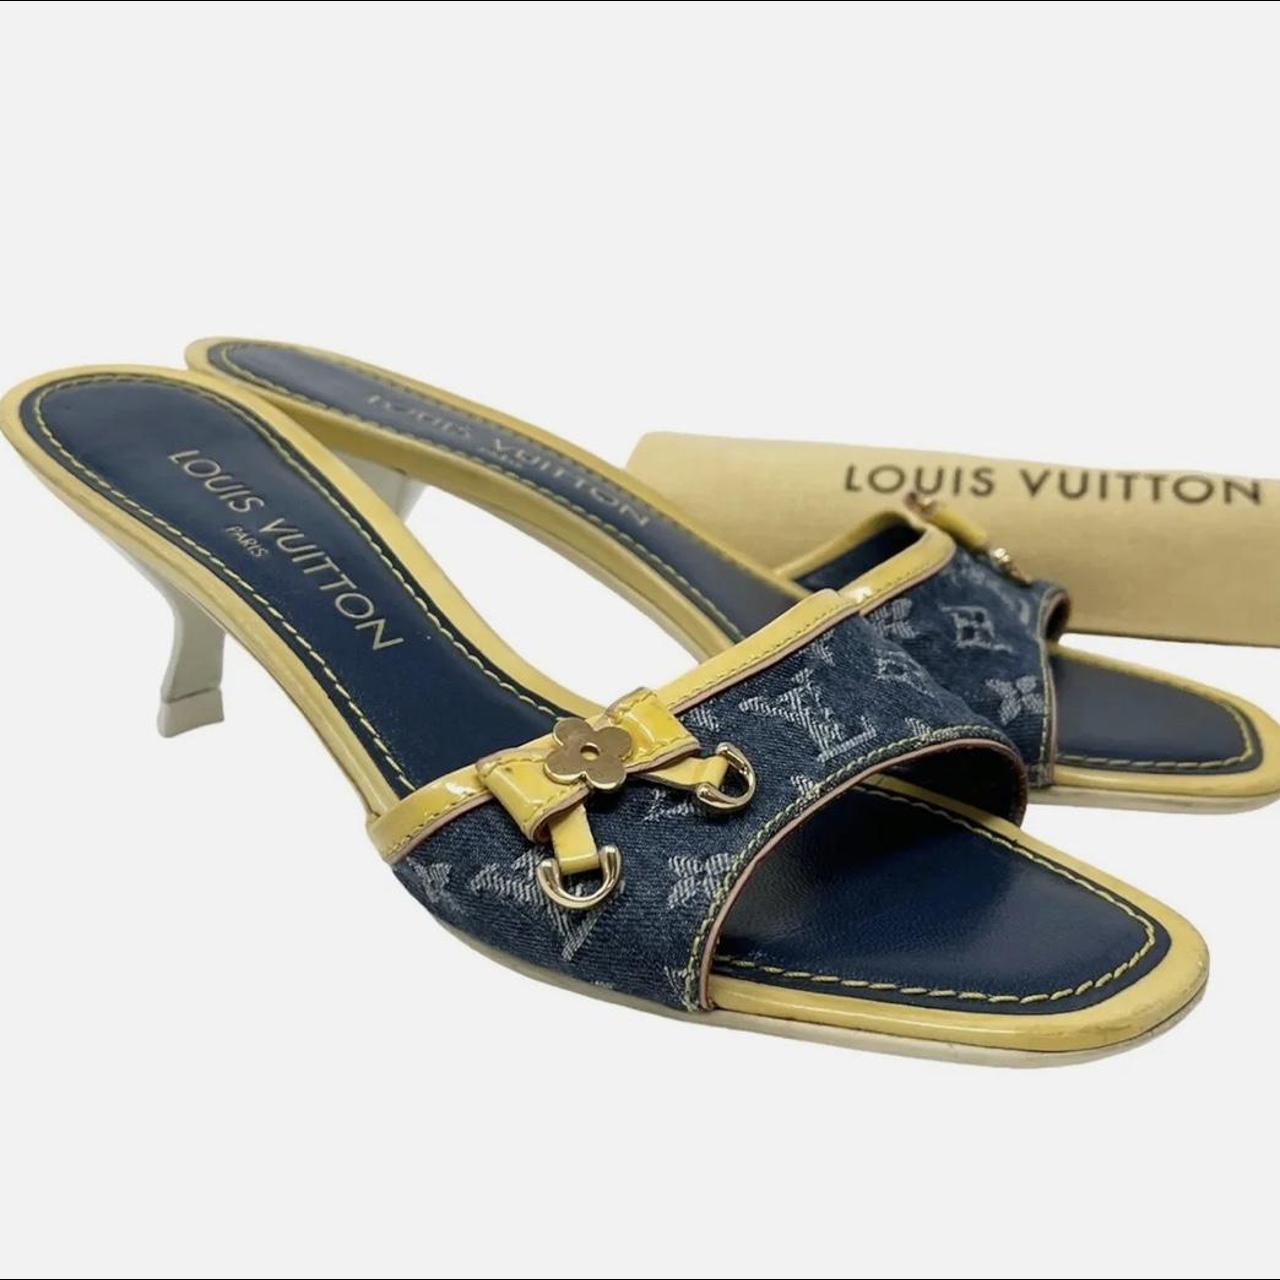 Louis Vuitton revival mule 👛 size women's - Depop